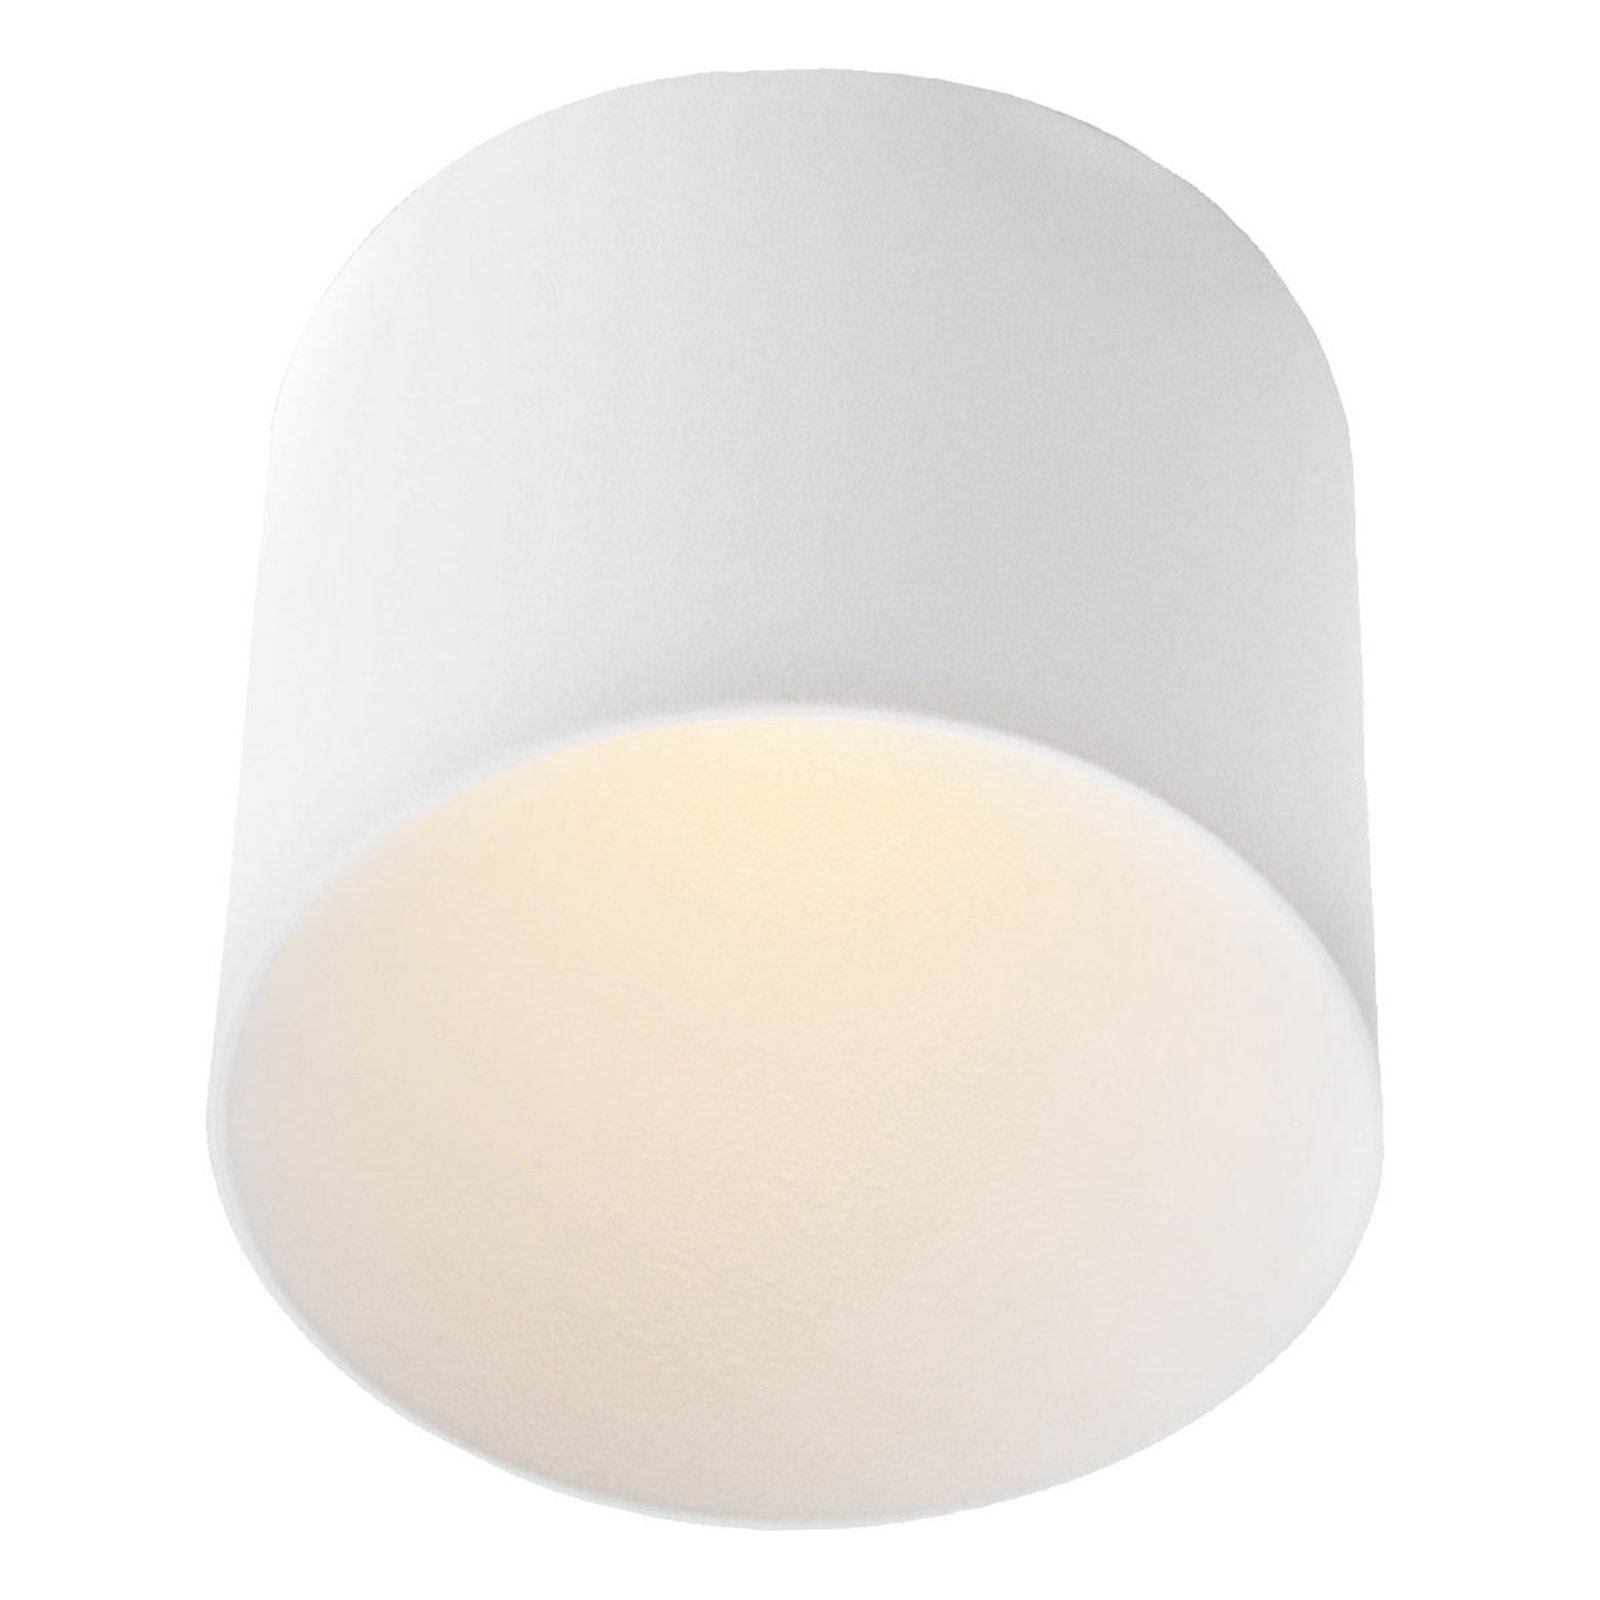 GF design Tubo recessed lamp IP54 white 2,700 K